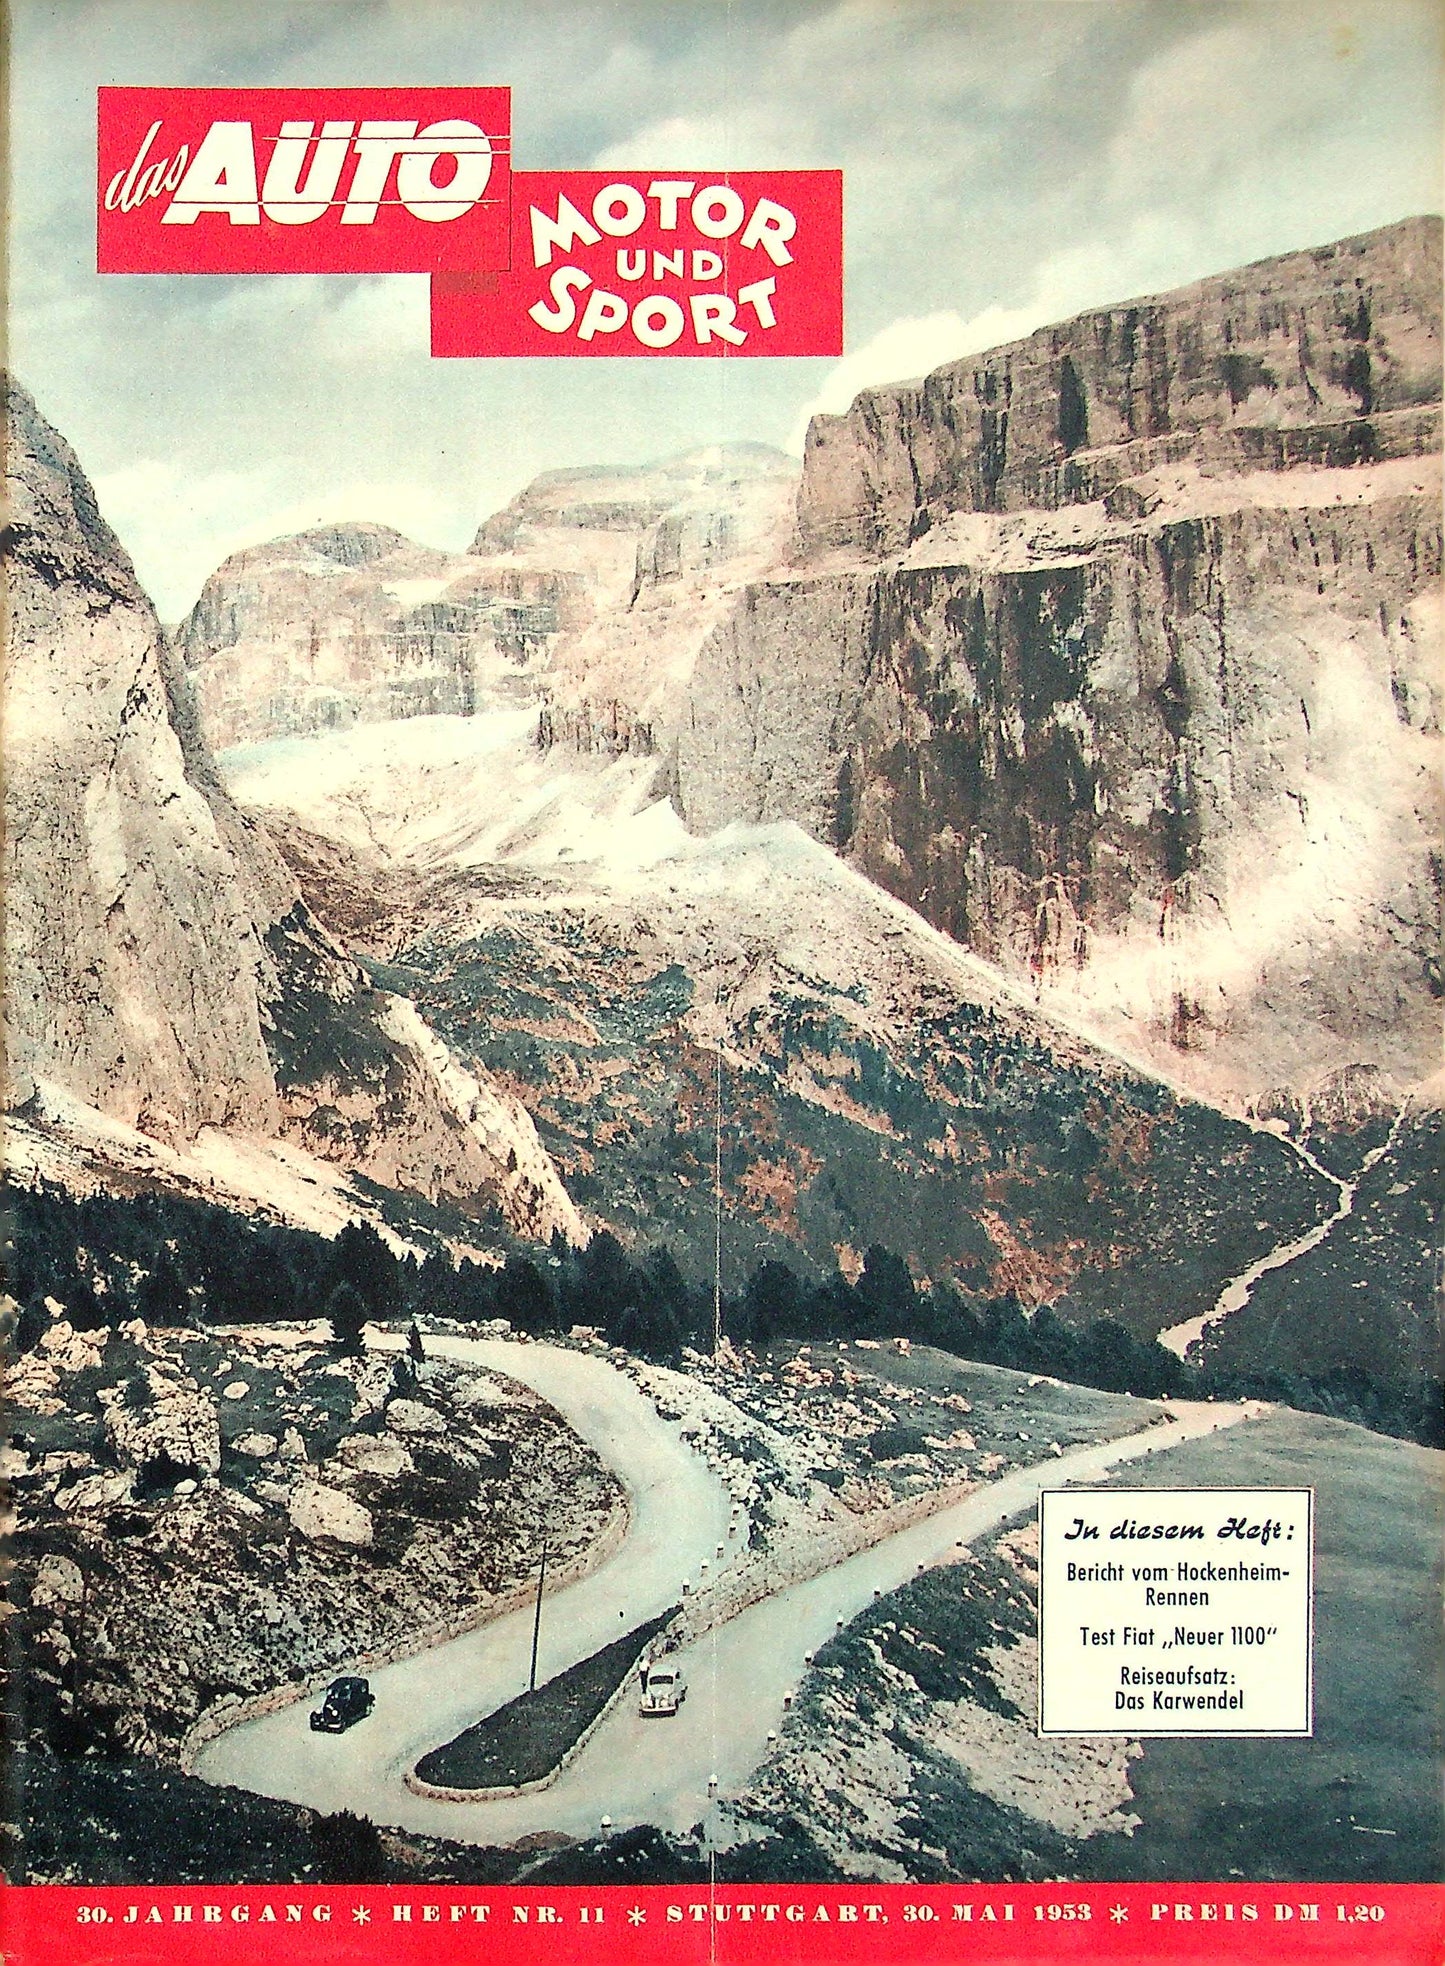 Auto Motor und Sport 11/1953